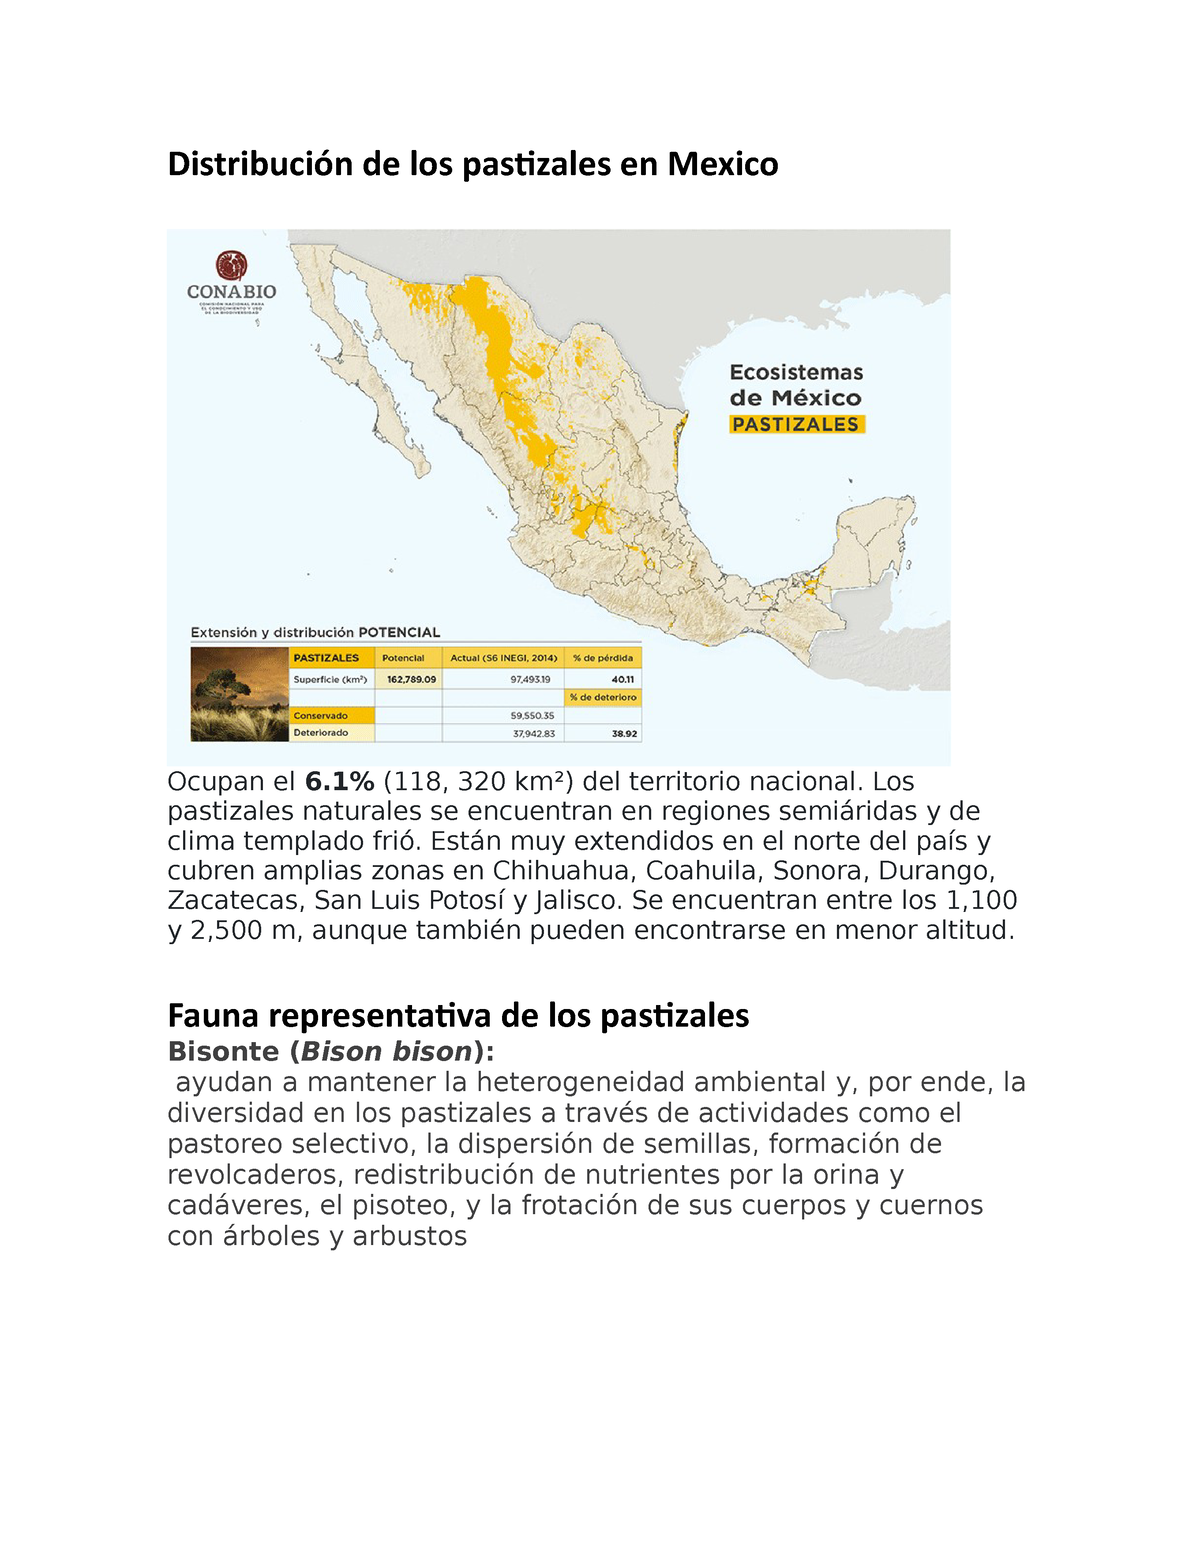 Distribución De Pastizales Y Fauna Endemica Distribución De Los Pastizales En Mexico Ocupan El 4149